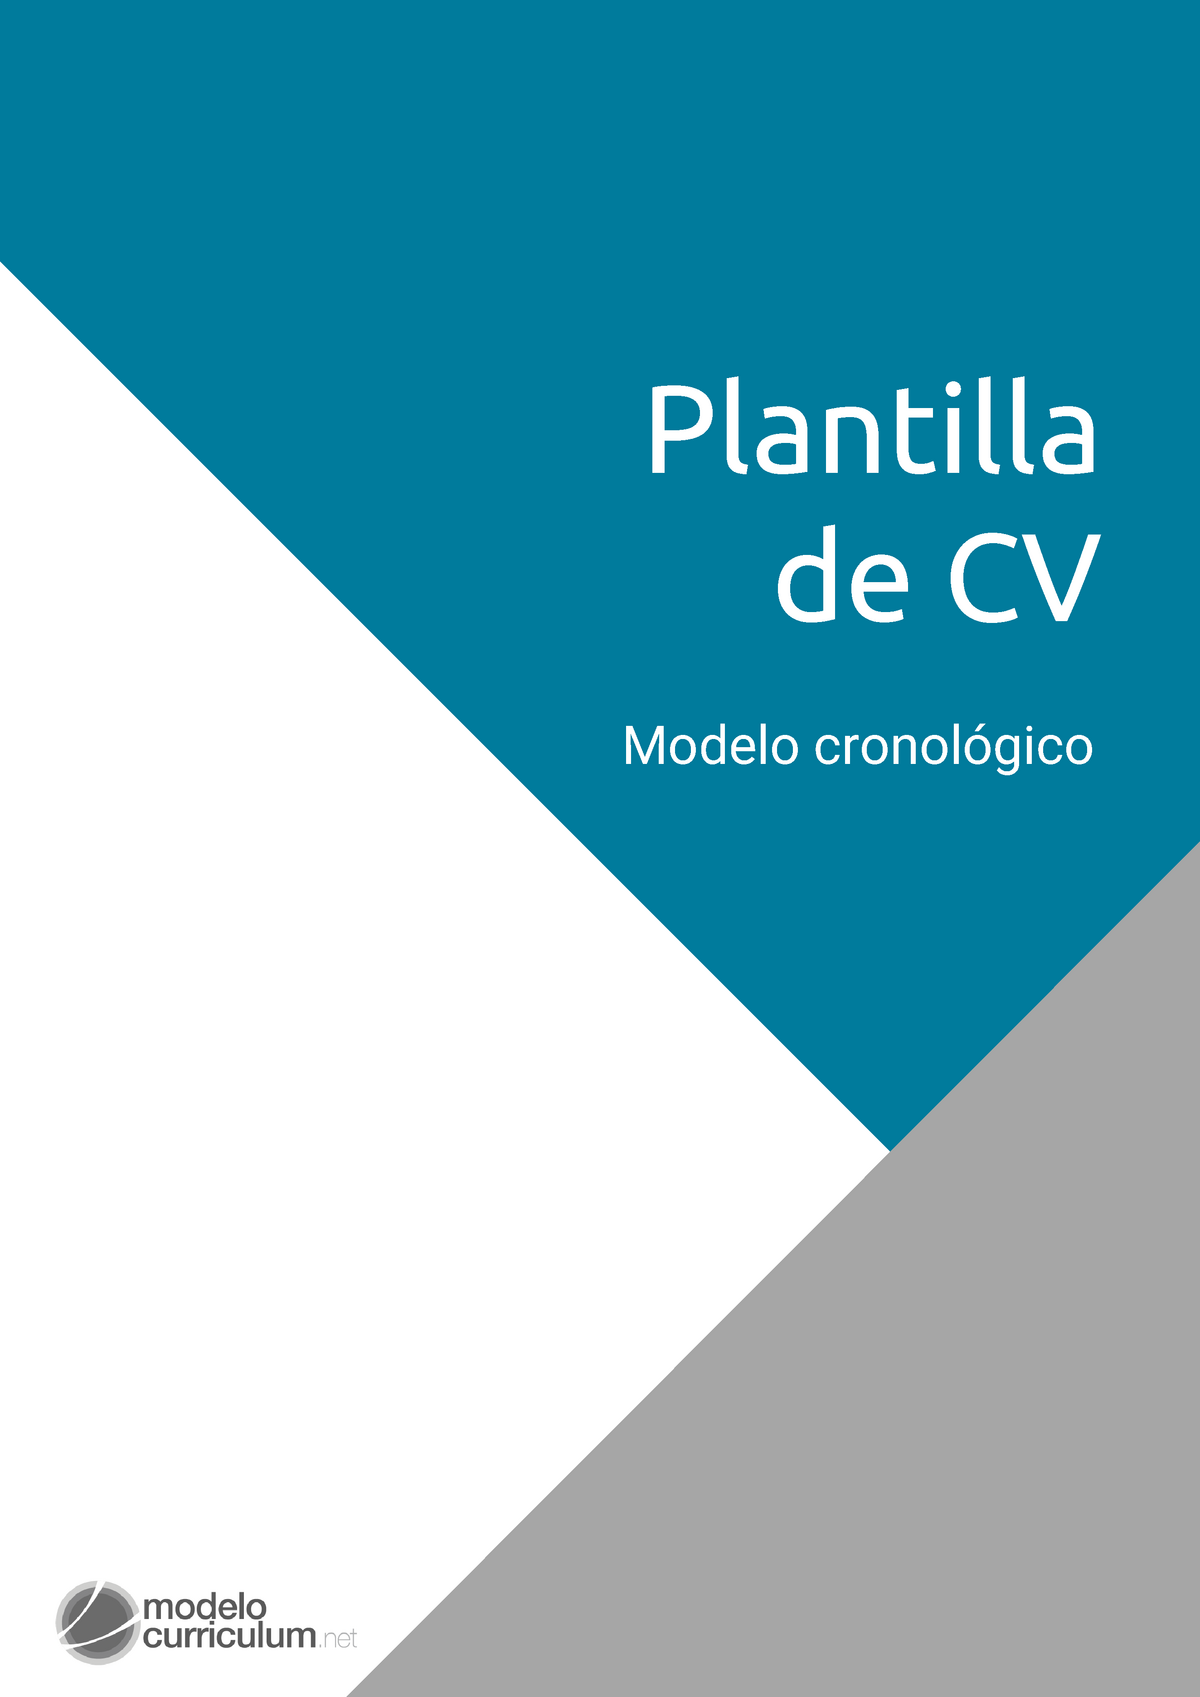 Guia plantilla curriculum cronologico - Plantilla de CV Modelo cronológico  ÍNDICE Partes del CV 00 - Studocu